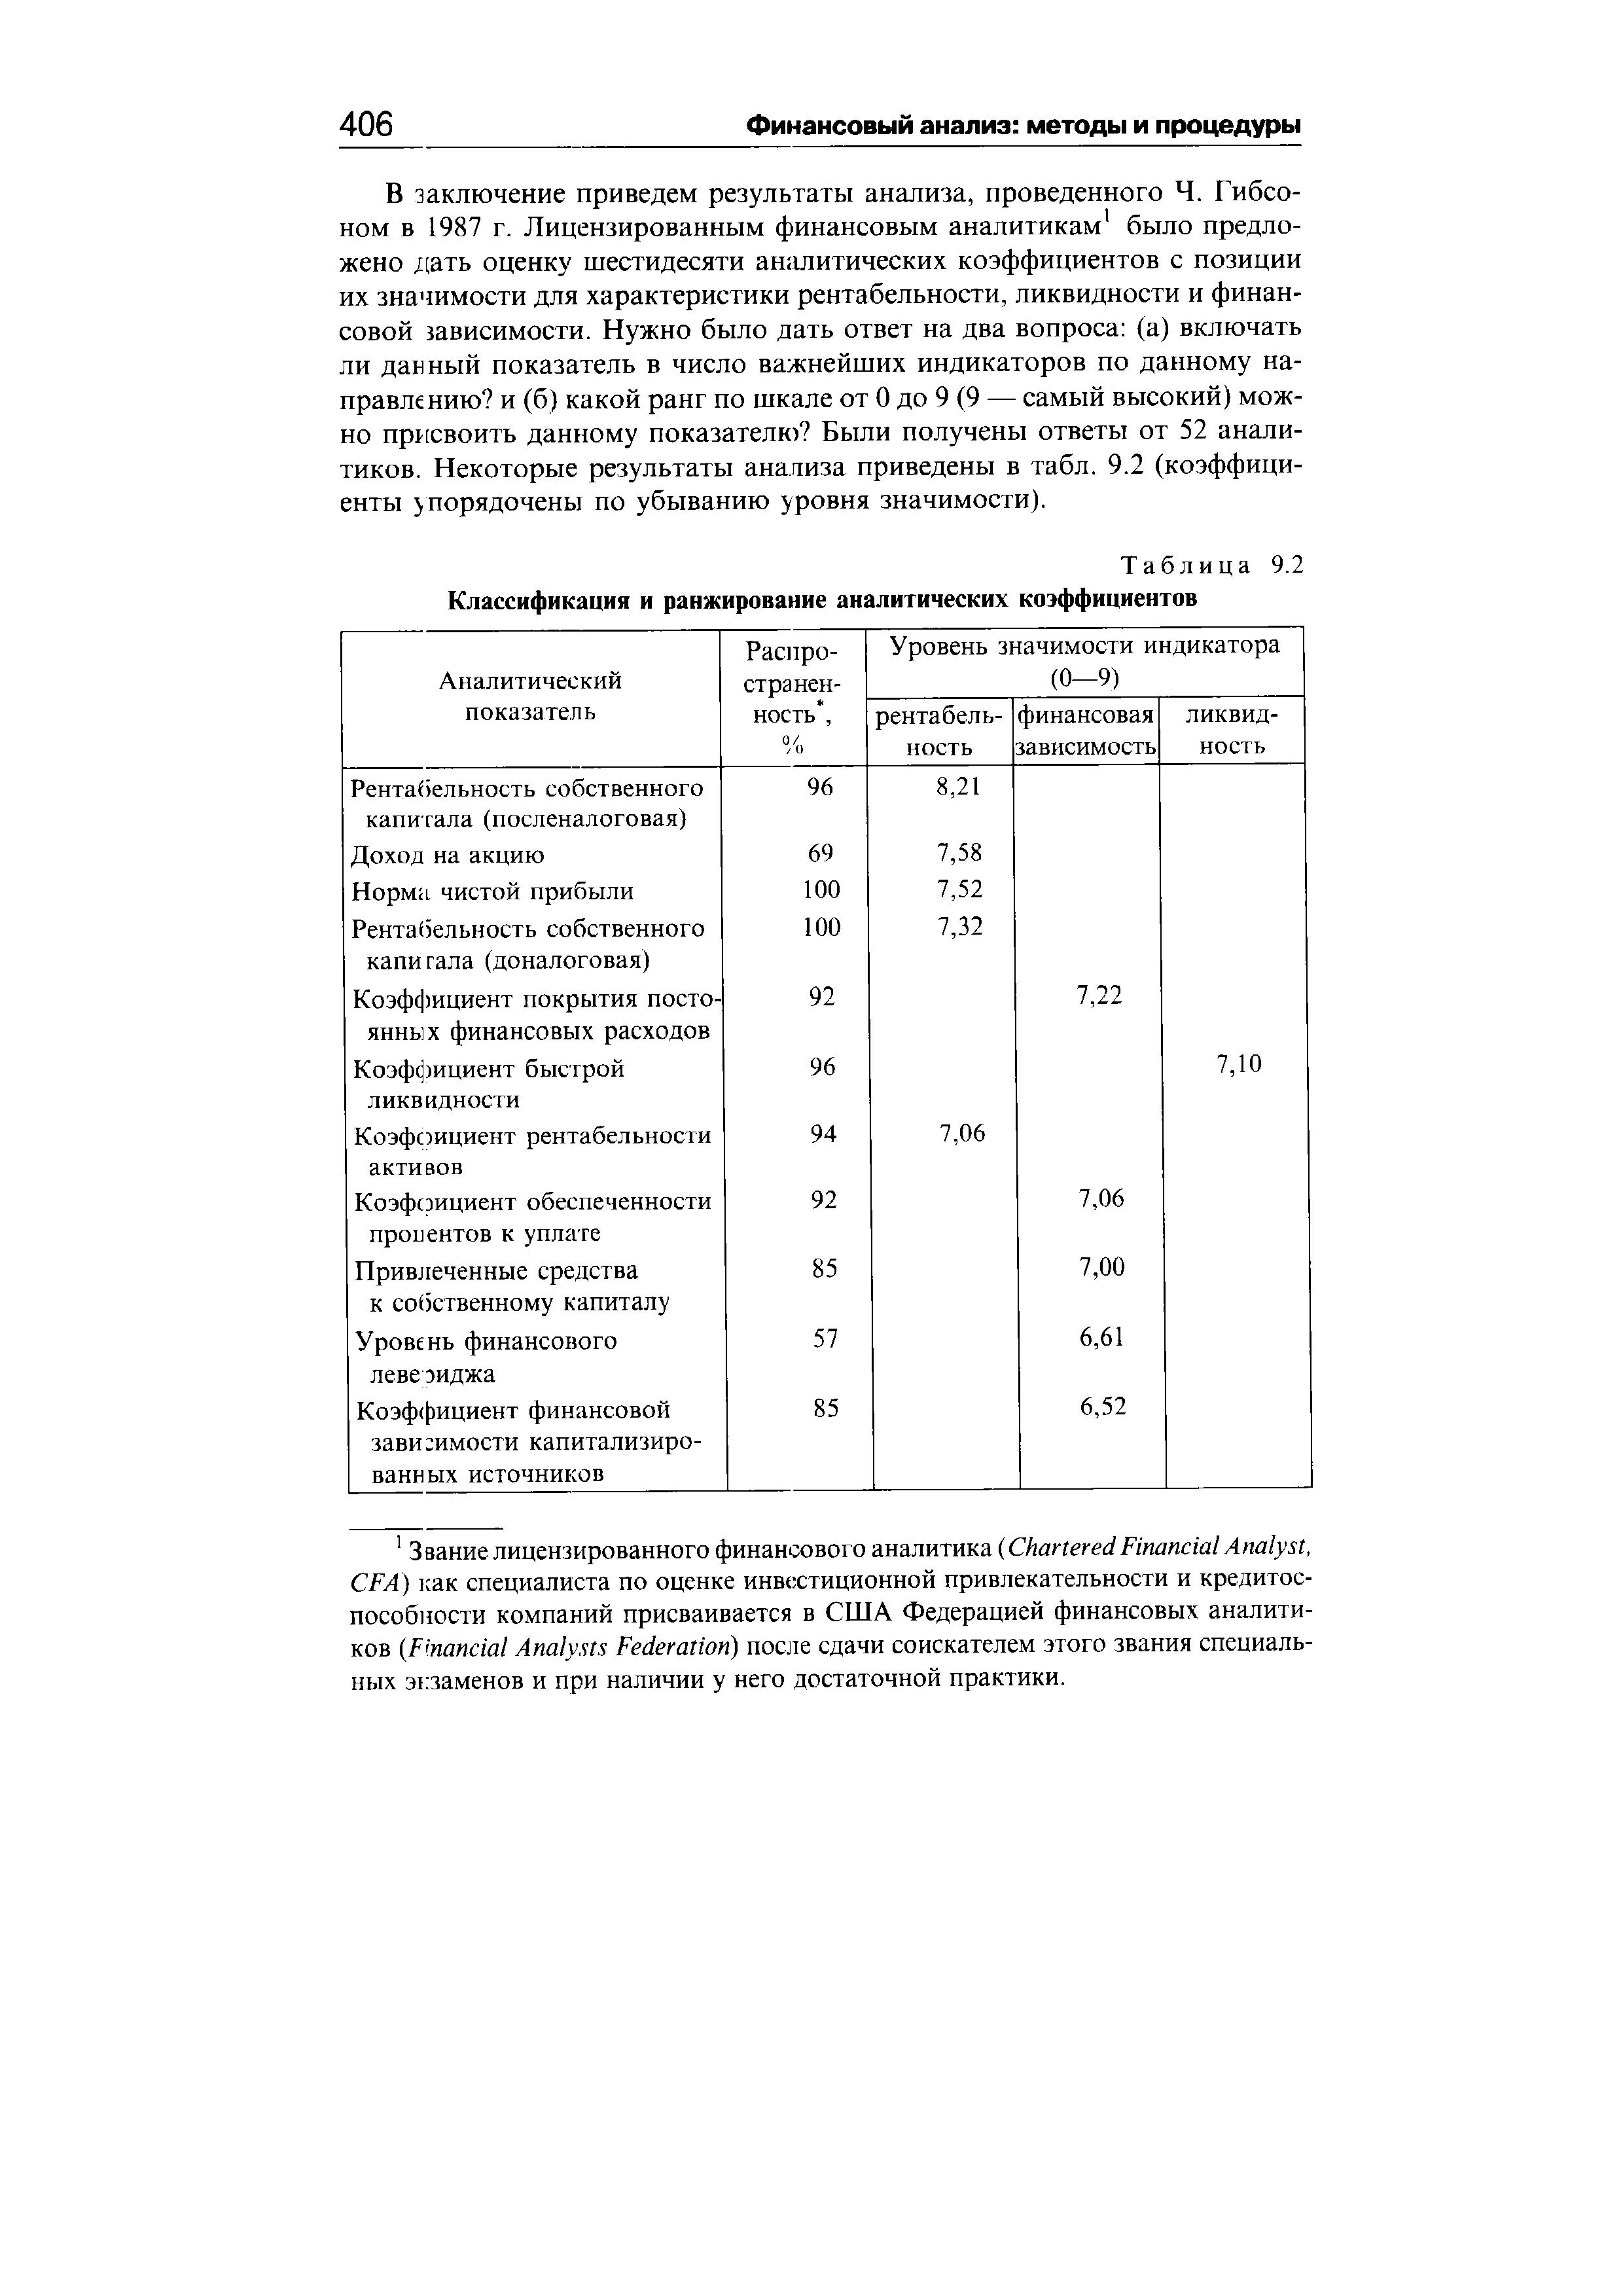 Таблица 9.2 Классификация и ранжирование аналитических коэффициентов
